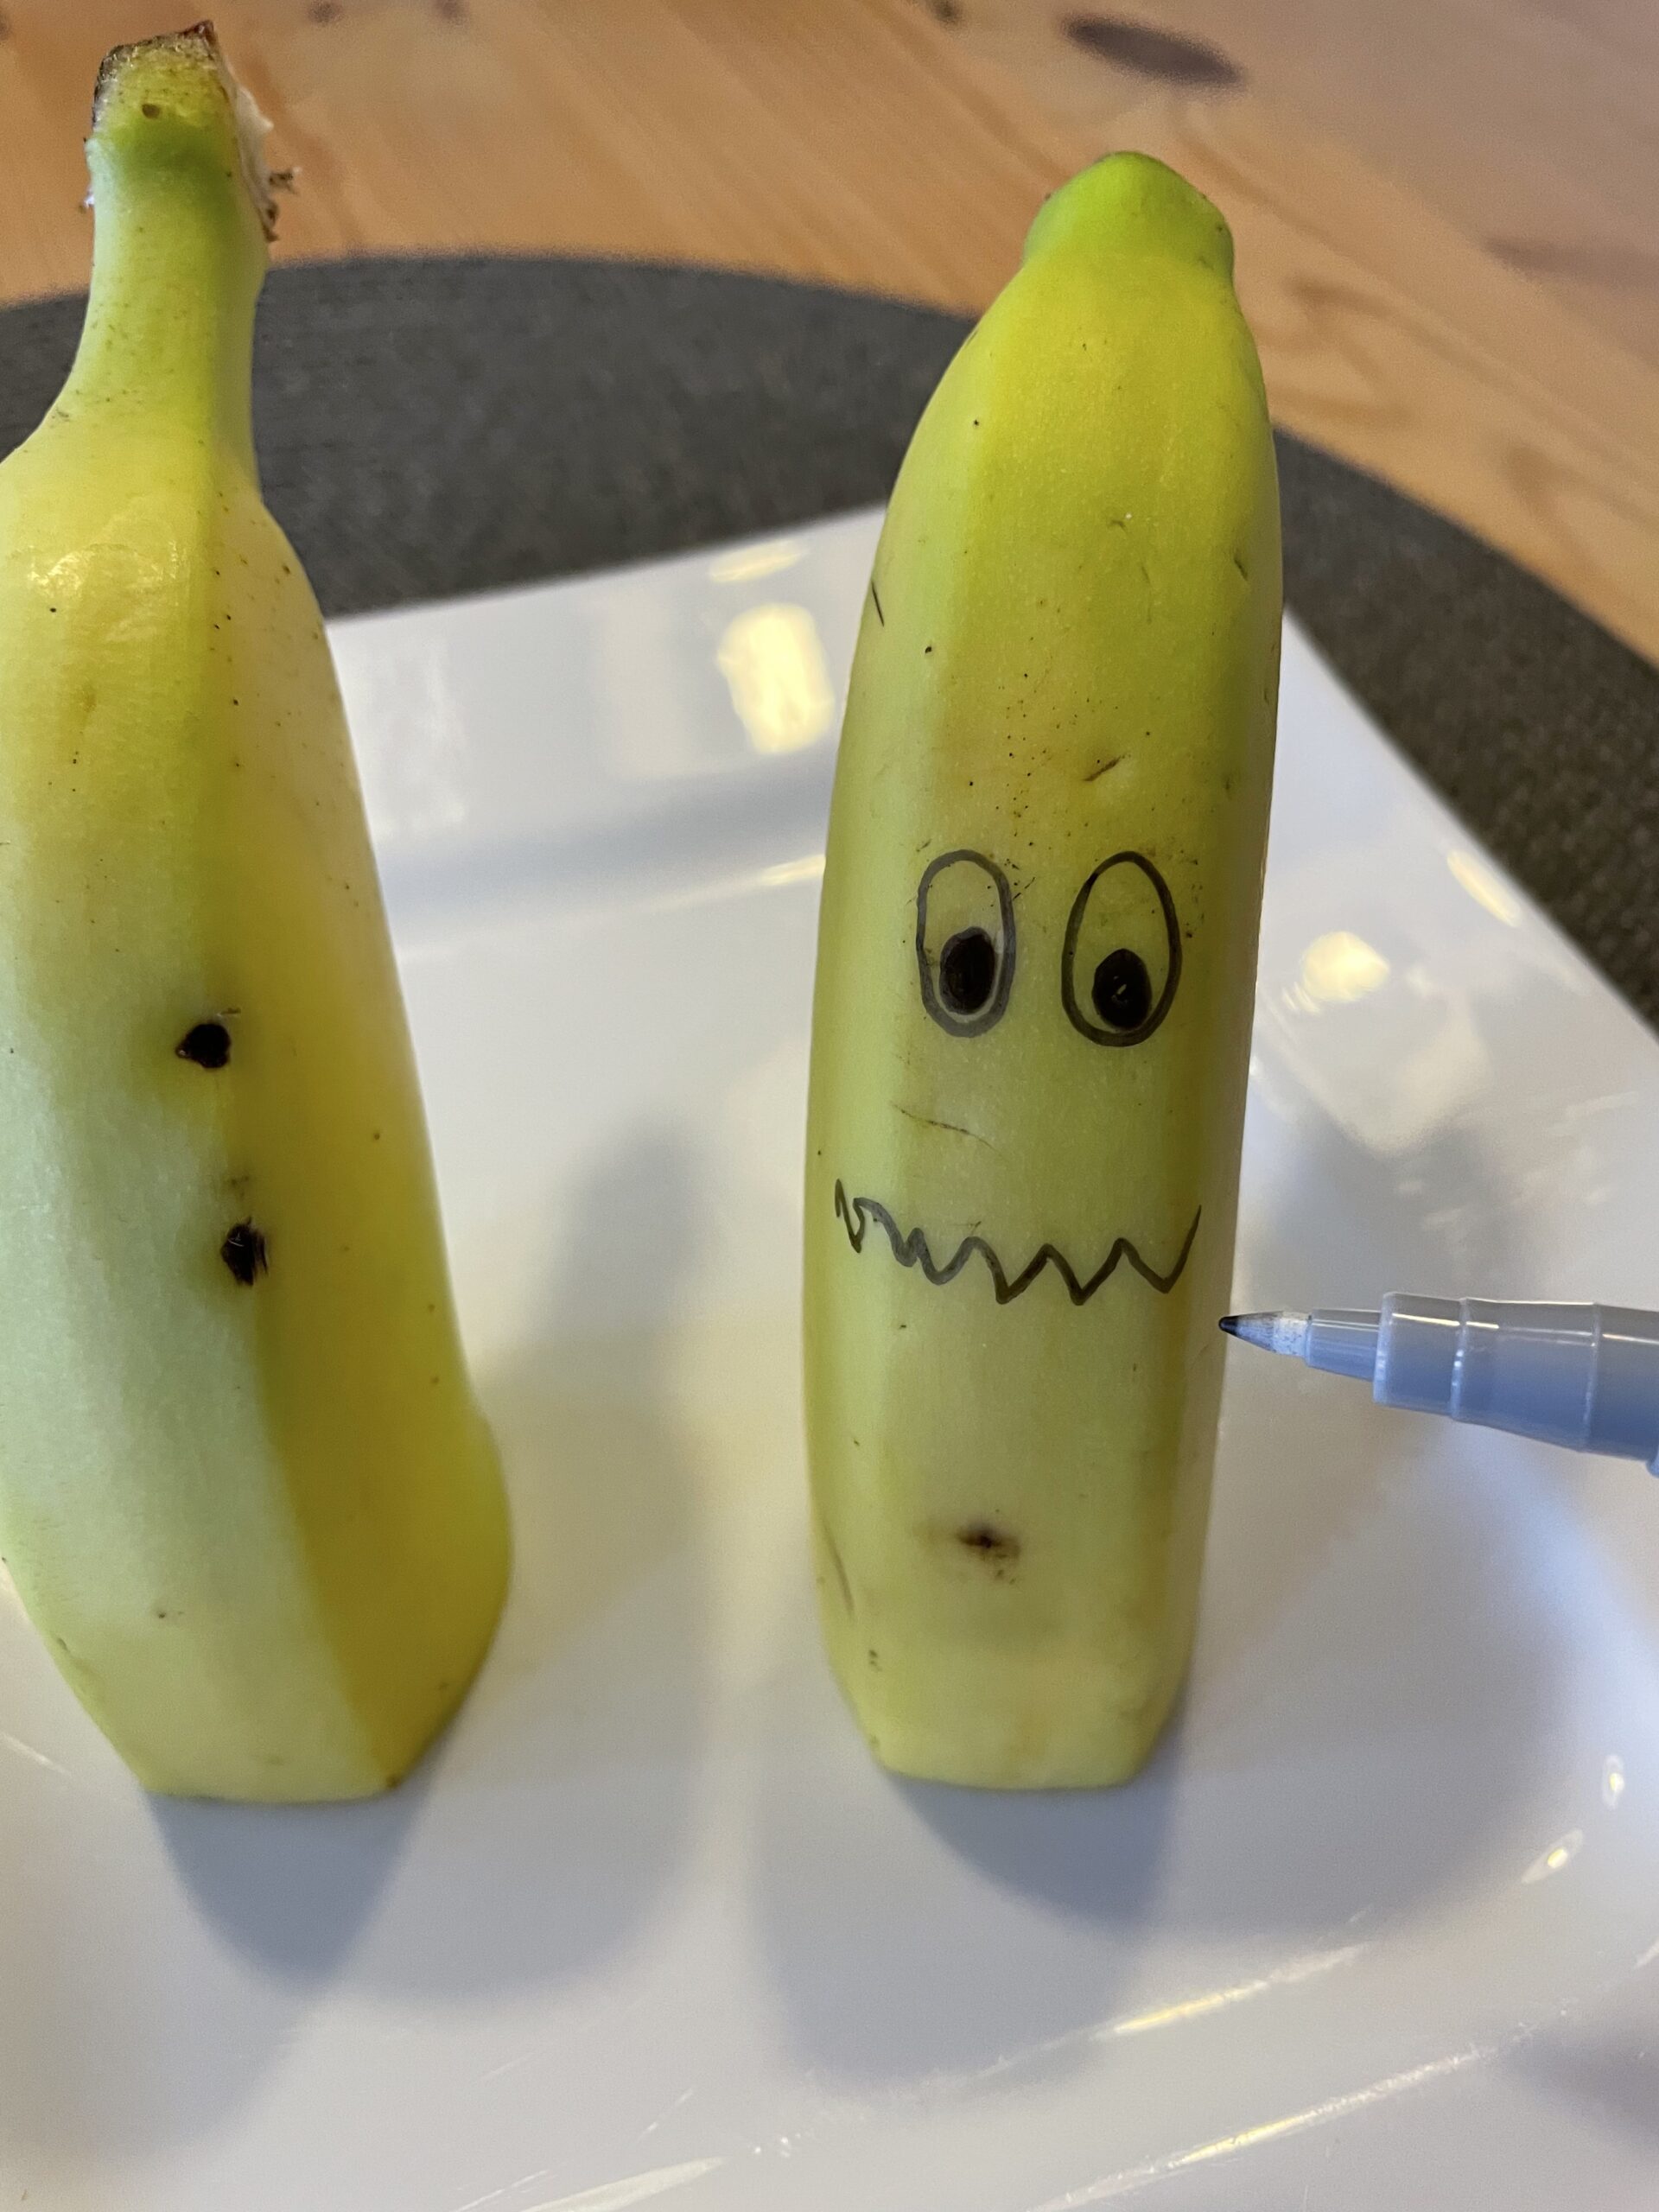 Bild zum Schritt 18 für das Bastel- und DIY-Abenteuer für Kinder: 'Anschließend malt ihr auf jede Bananenhälfte ein Gesicht.'